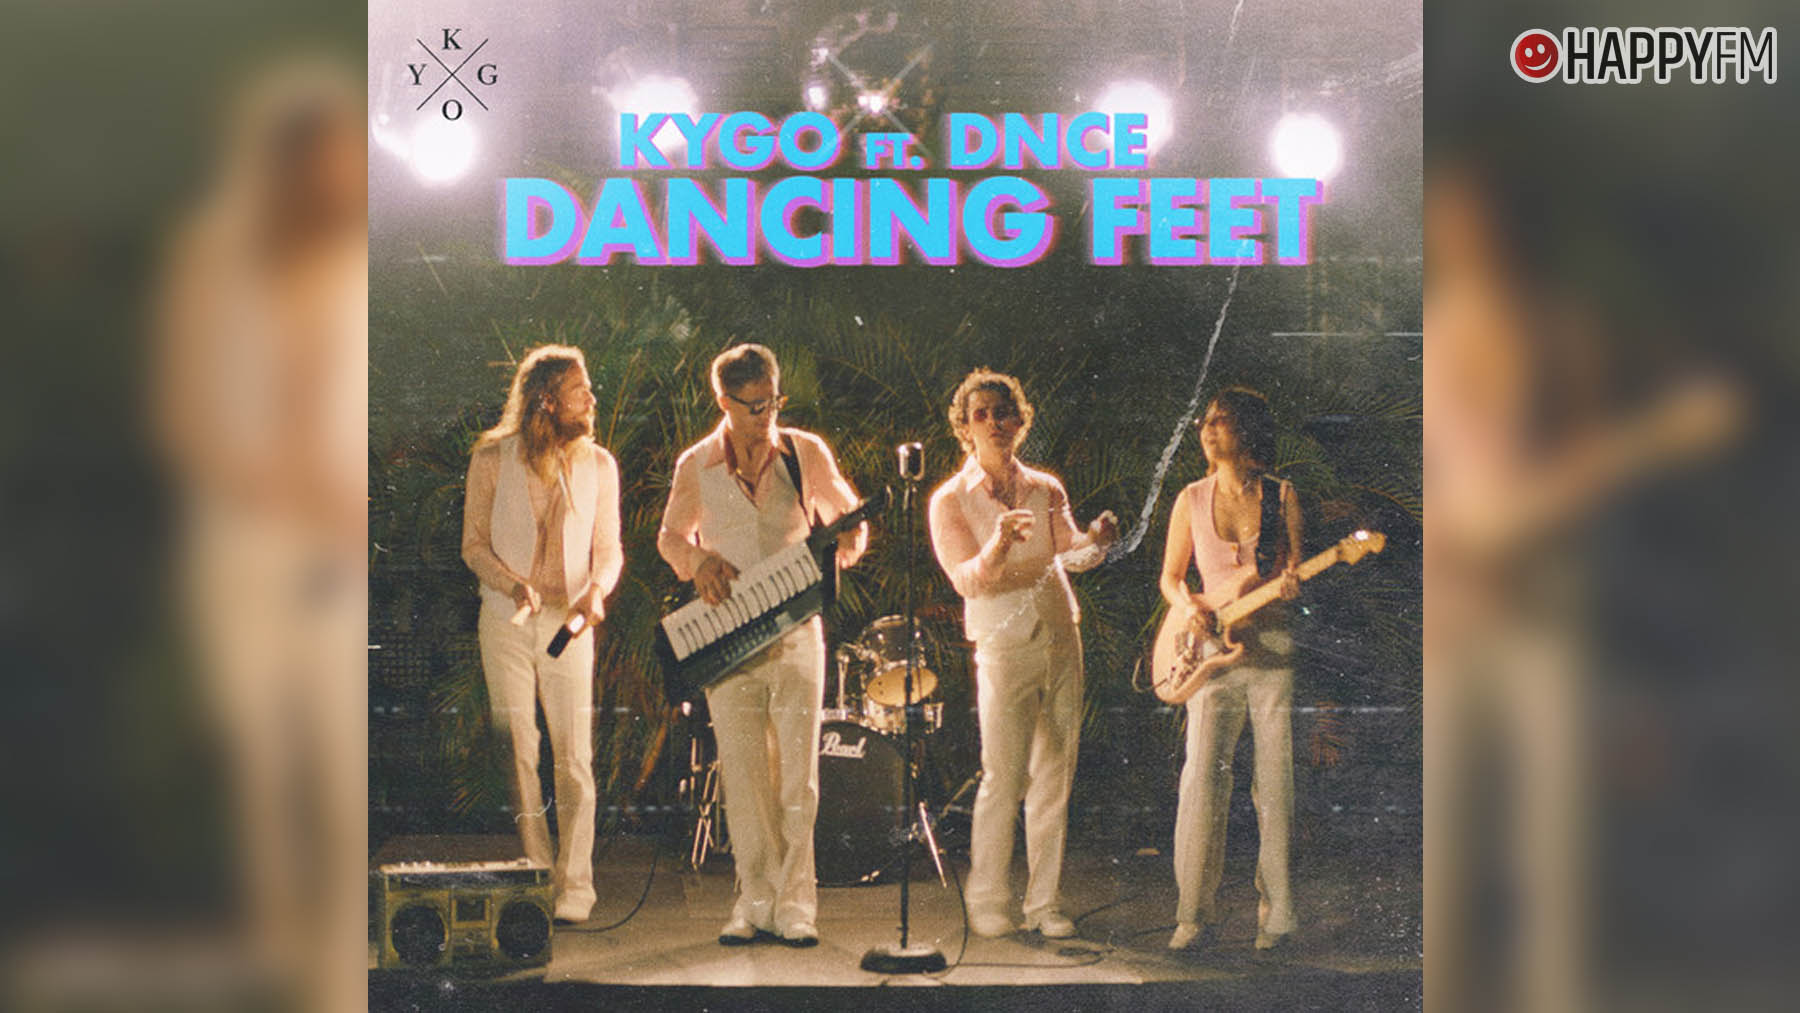 Feet feat. Kygo Dancing feet. Kygo Dancing feet Lyrics. Kygo Dance Dancing feet. Often Kygo Dance.